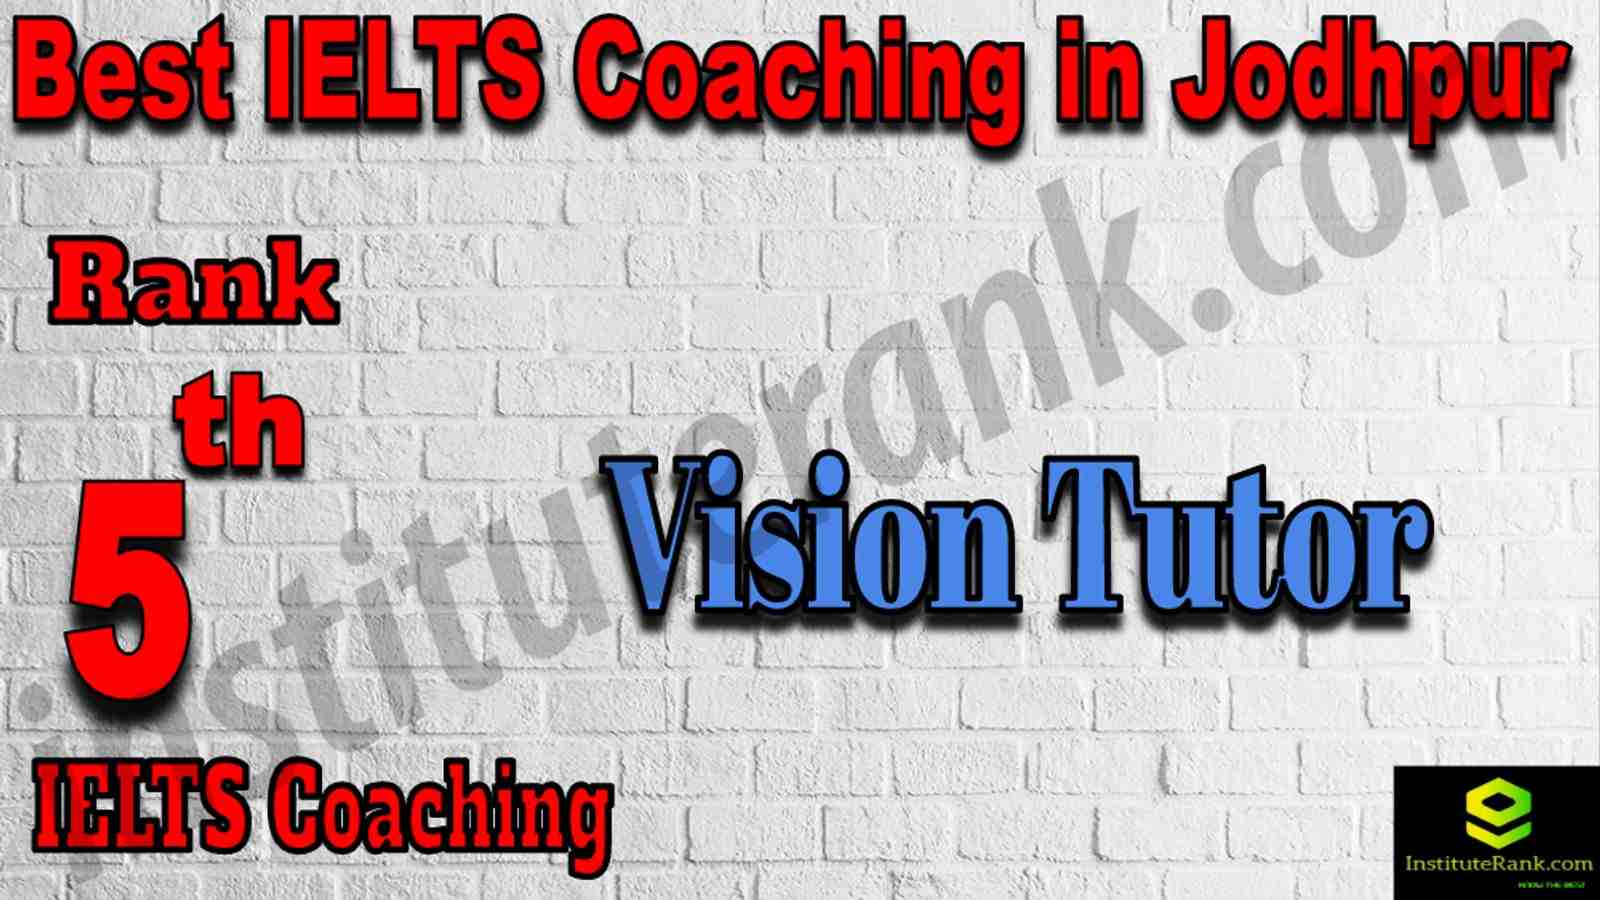 5th Best IELTS Coaching in Jodhpur